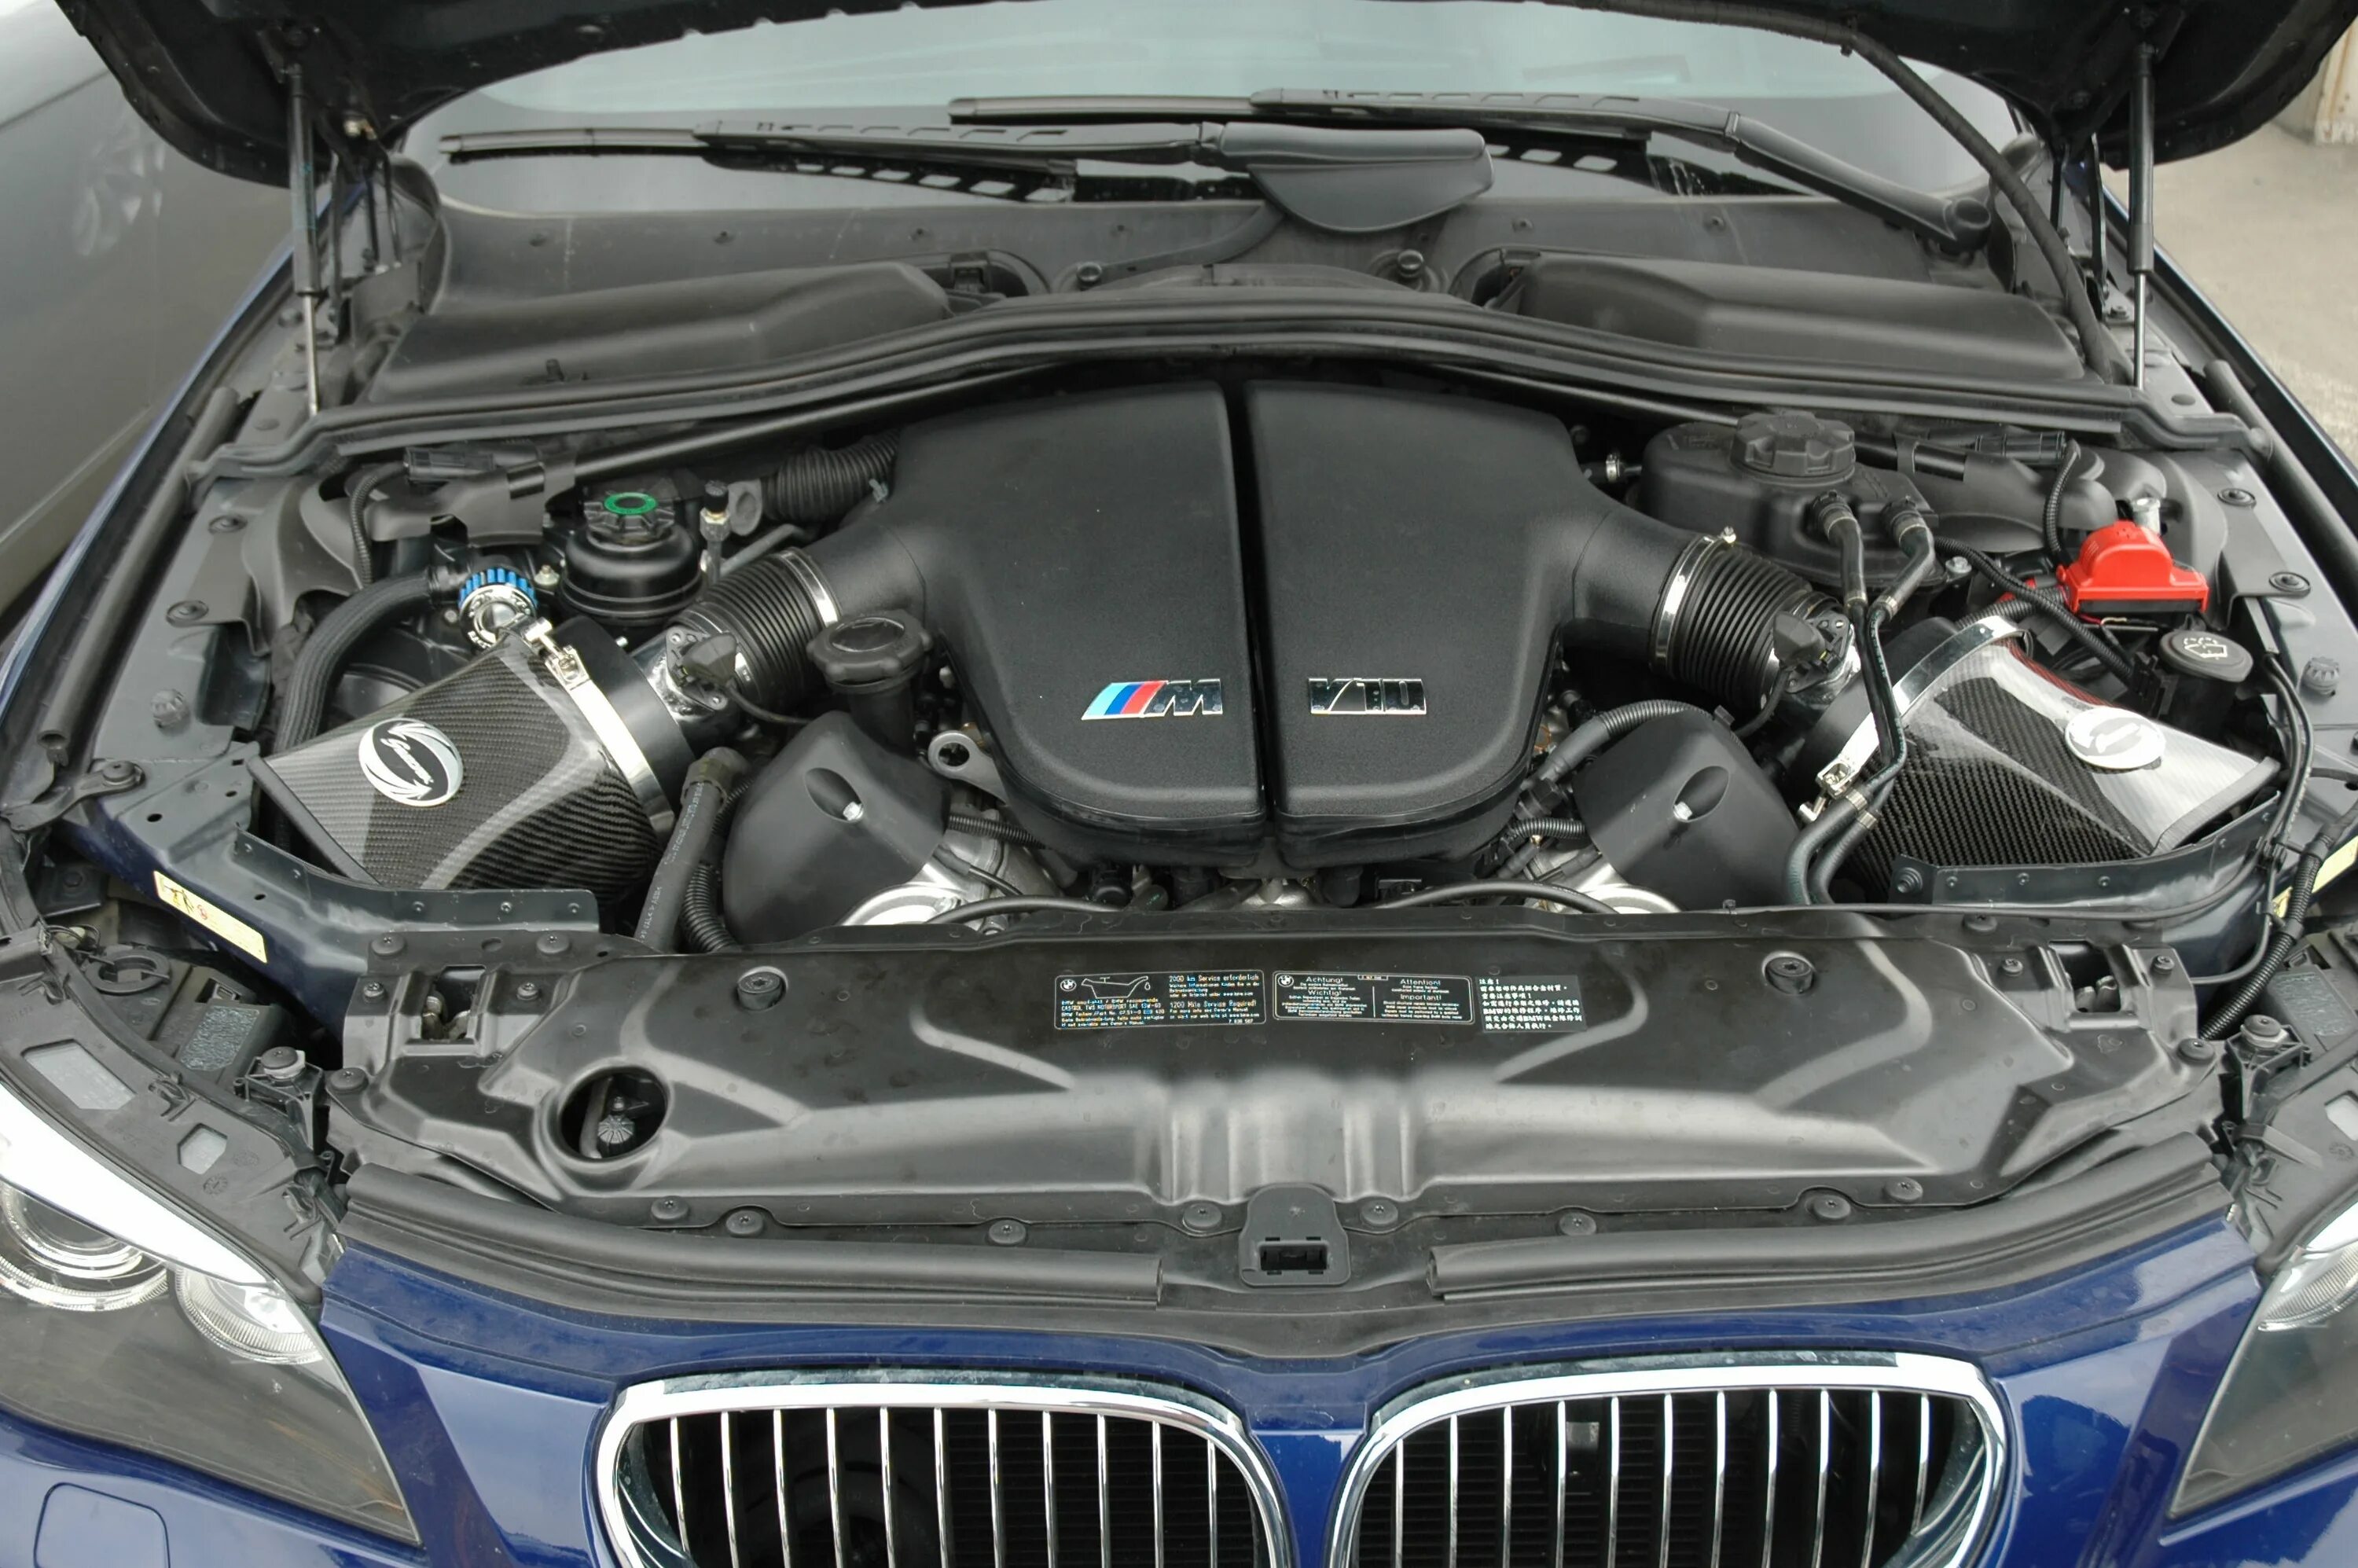 М5 какой мотор. BMW m5 e60 мотор. V10 BMW m5 мотор. БМВ м5 е60 двигатель v10. BMW m5 e60 двигатель v10.